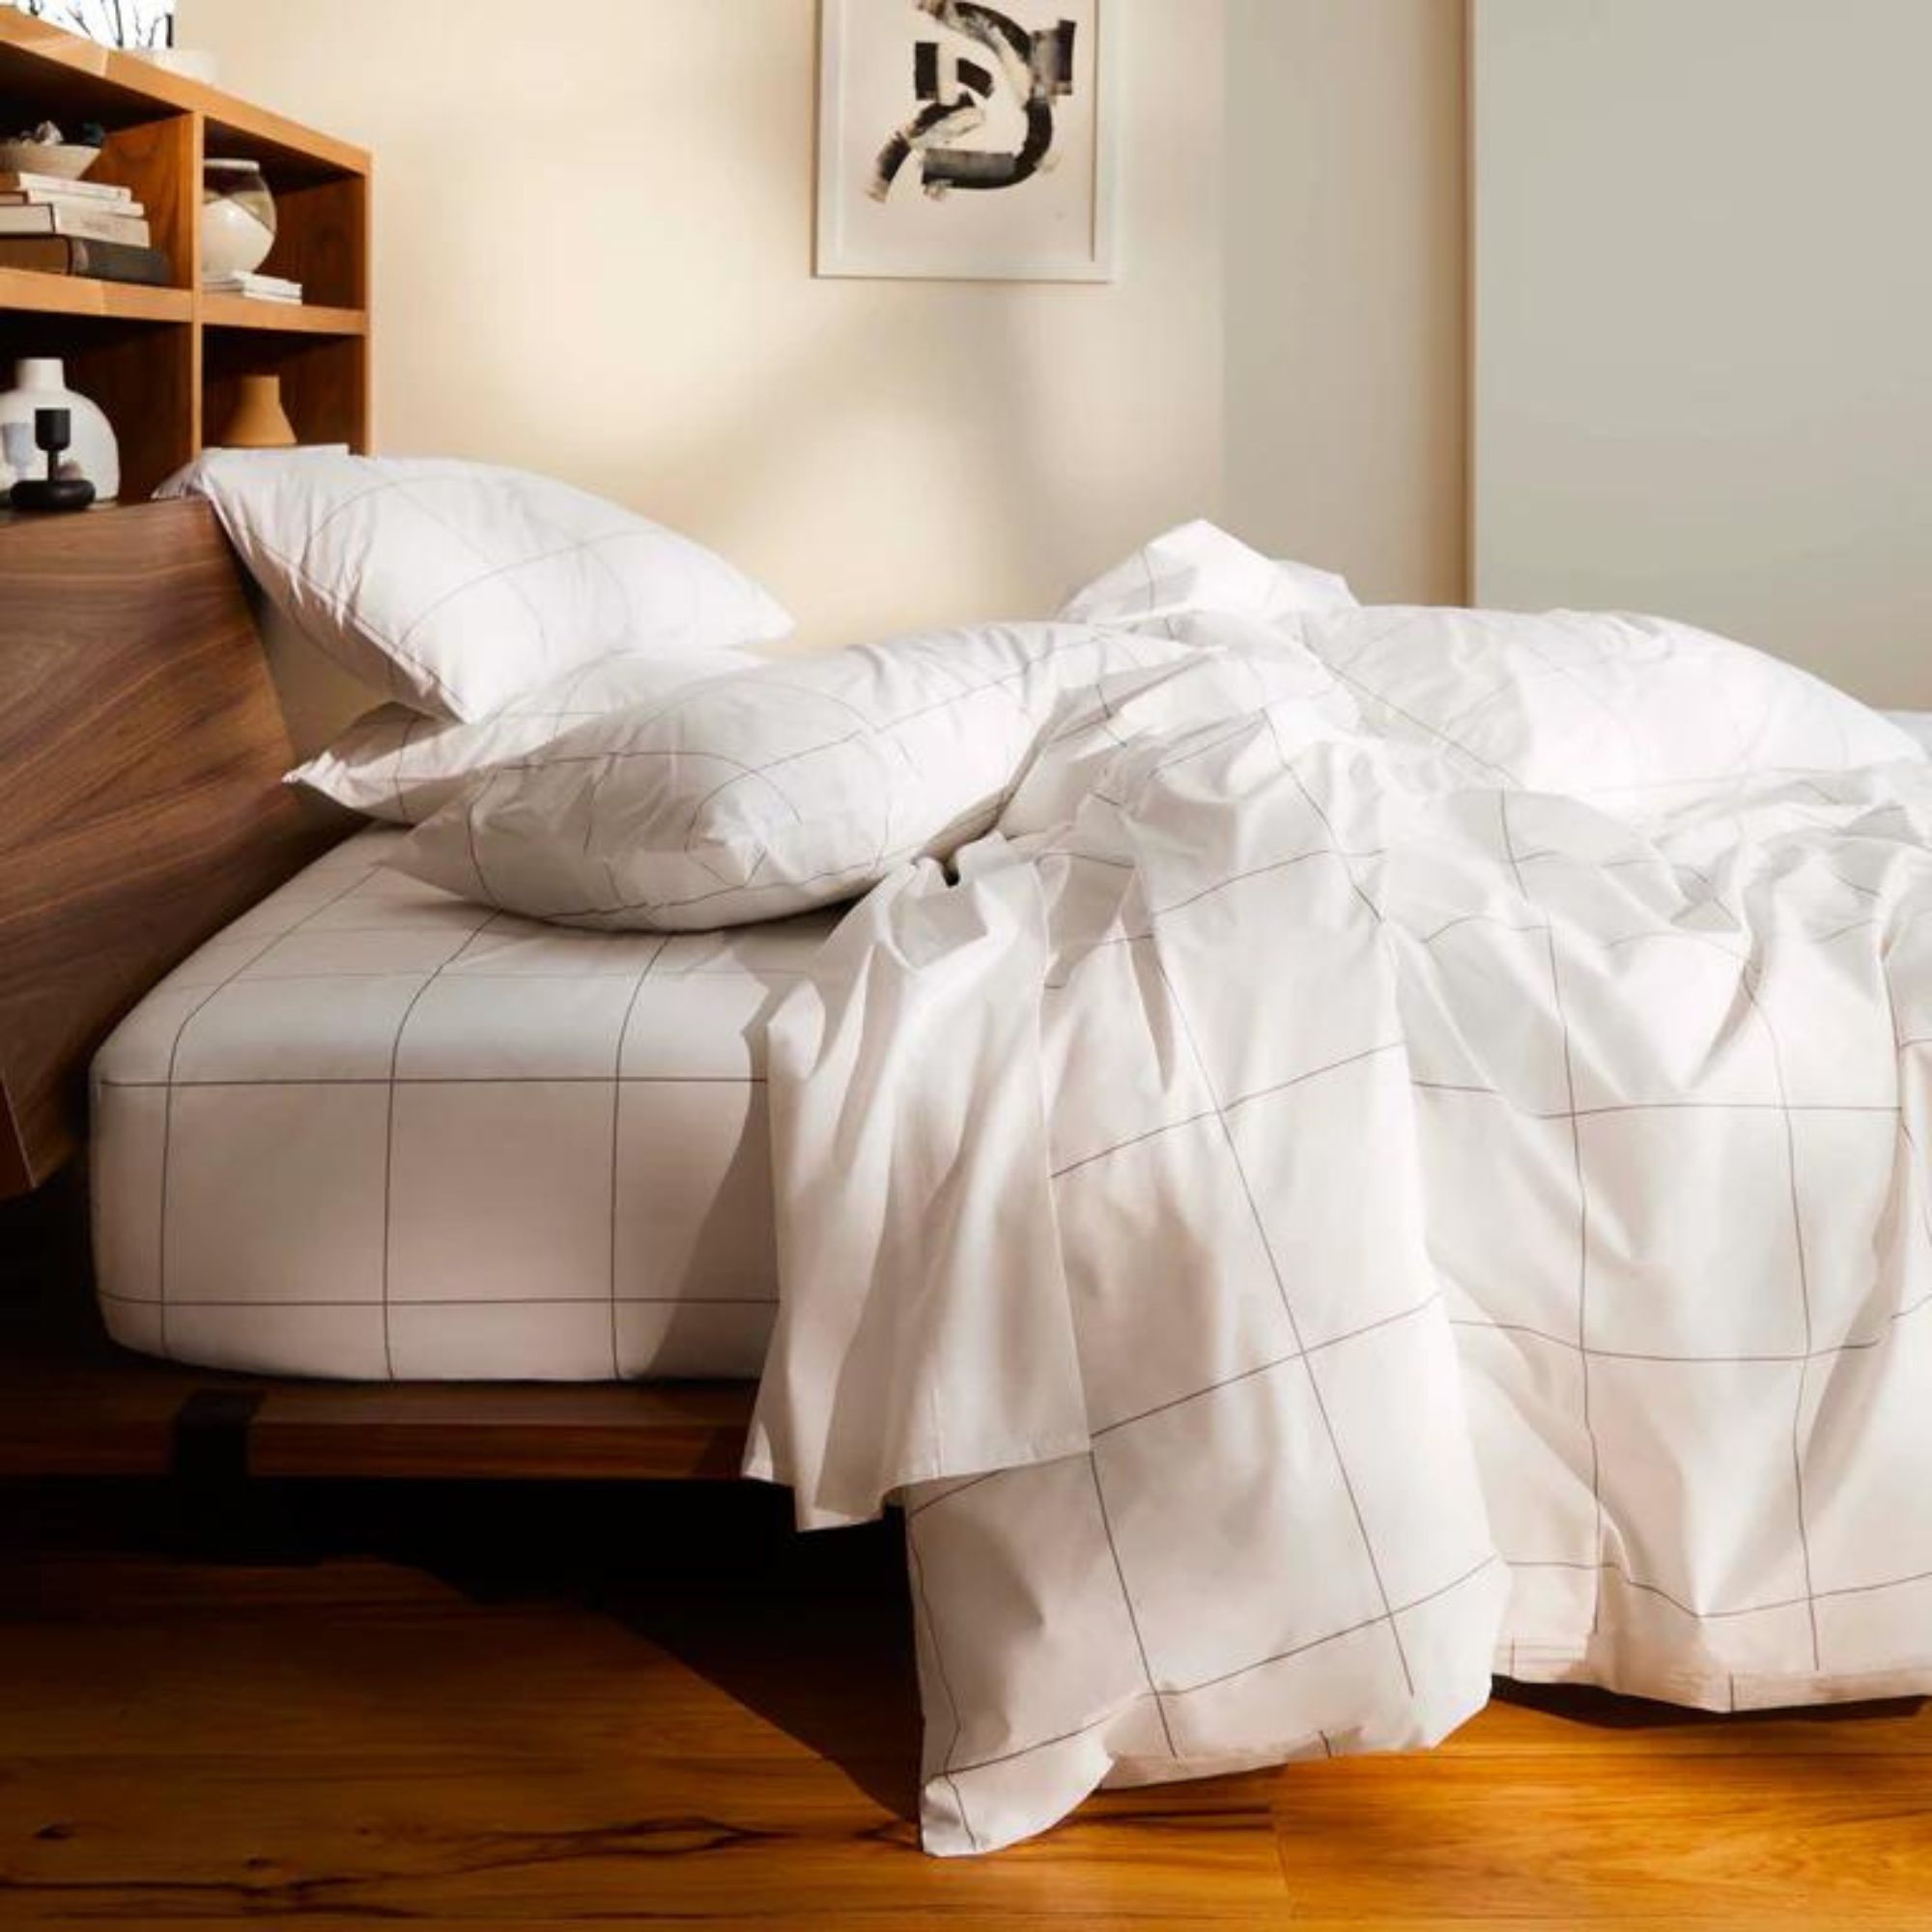 Brooklinen Luxe Core Sheet Set on a bed.